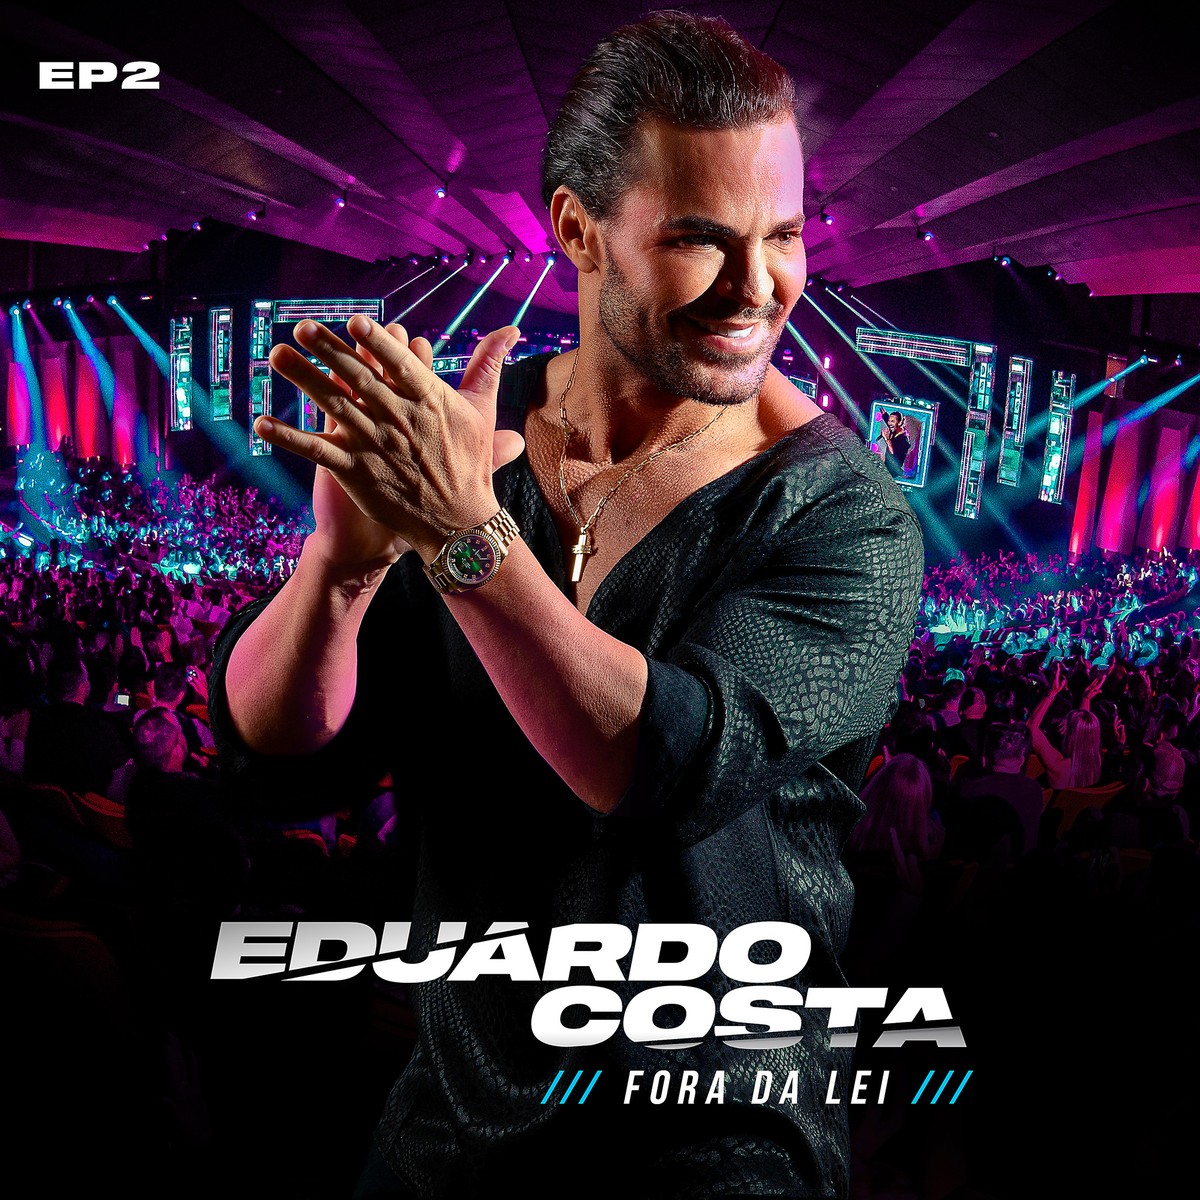 Eduardo Costa regrava o último sucesso de Raul Seixas em EP do álbum ‘Fora da lei’ | Blog do Mauro Ferreira